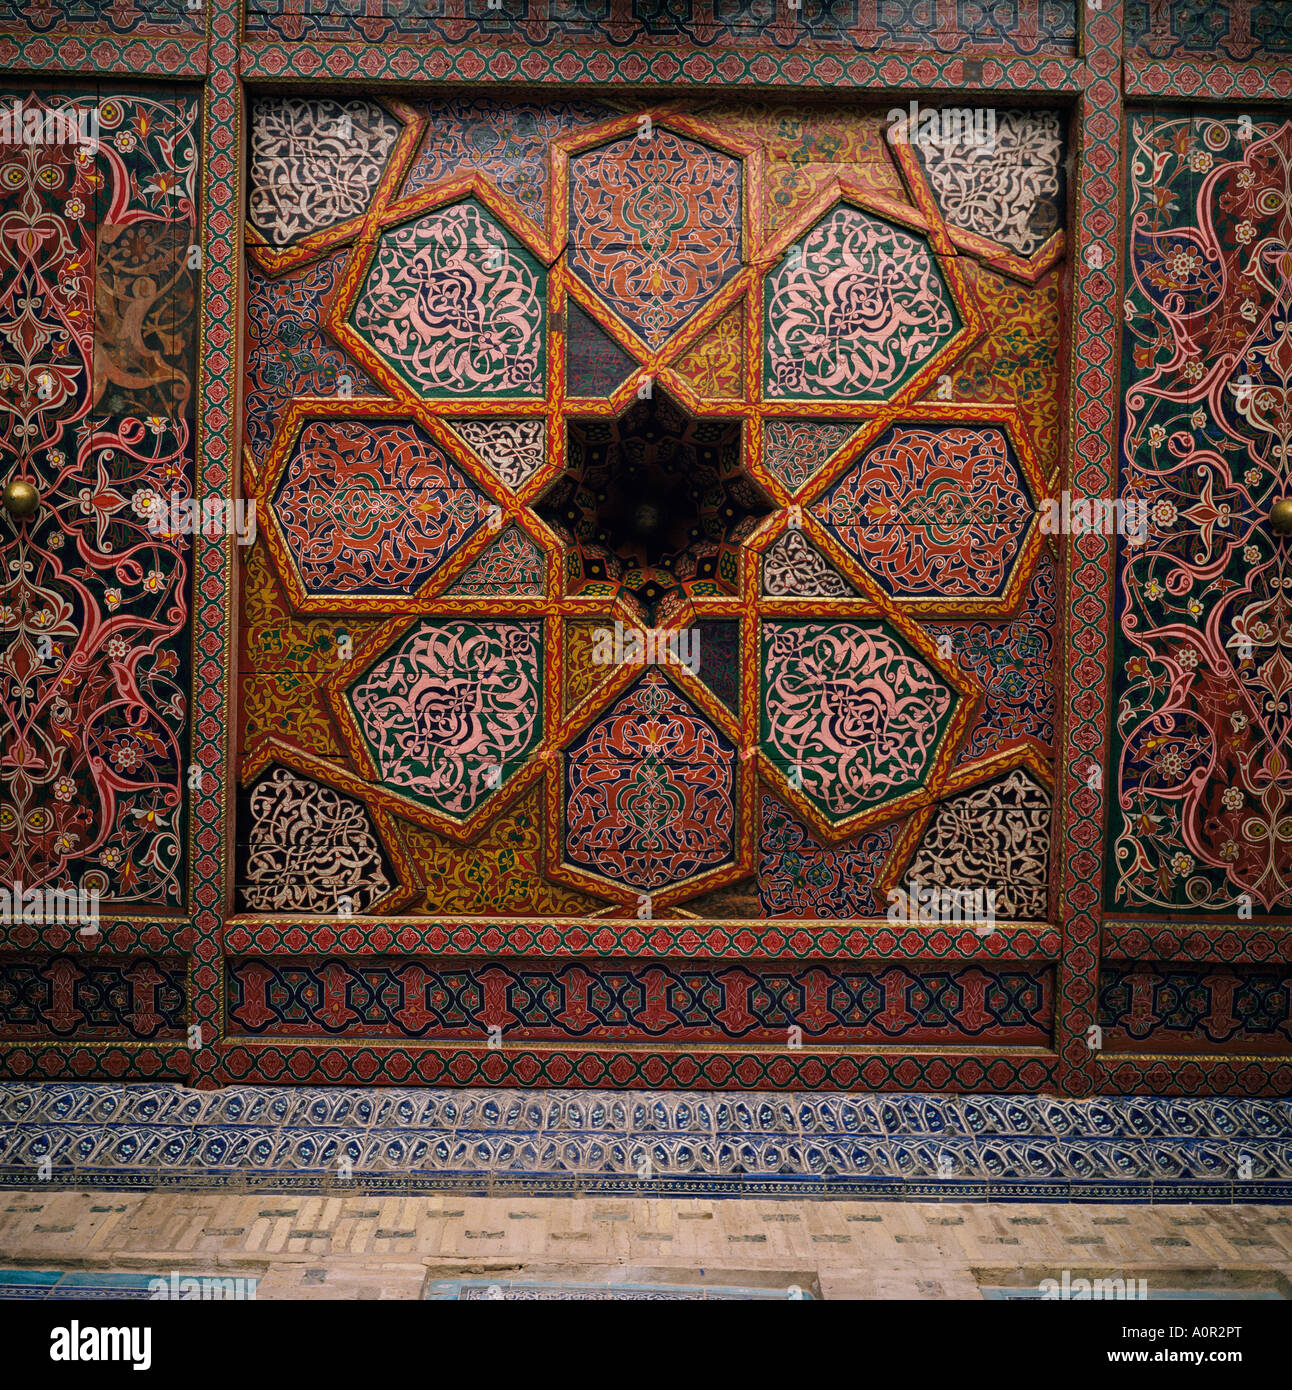 Painted wooden ceiling Tash Khaili Palace Khiva Uzbekistan C I S Central Asia Asia Stock Photo